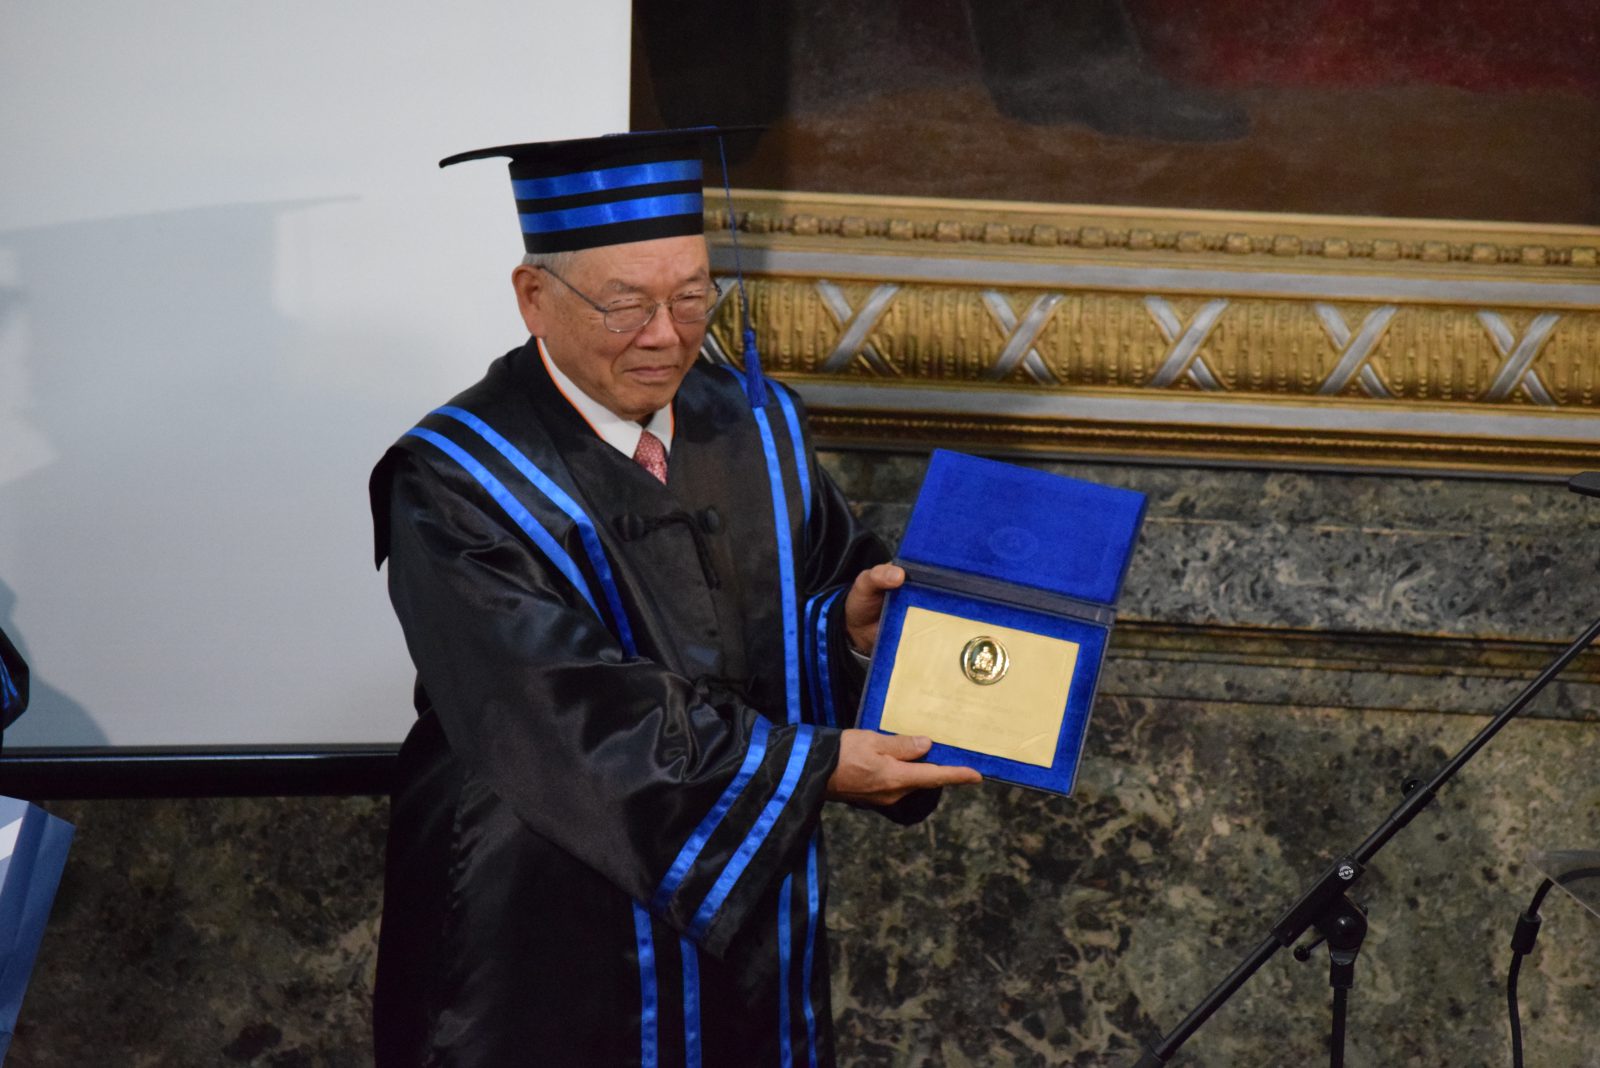 nam-pyo-suh-un-reputat-profesor-si-cercetator-din-coreea-de-sud-doctor-honoris-causa-al-universitatii-tehnice